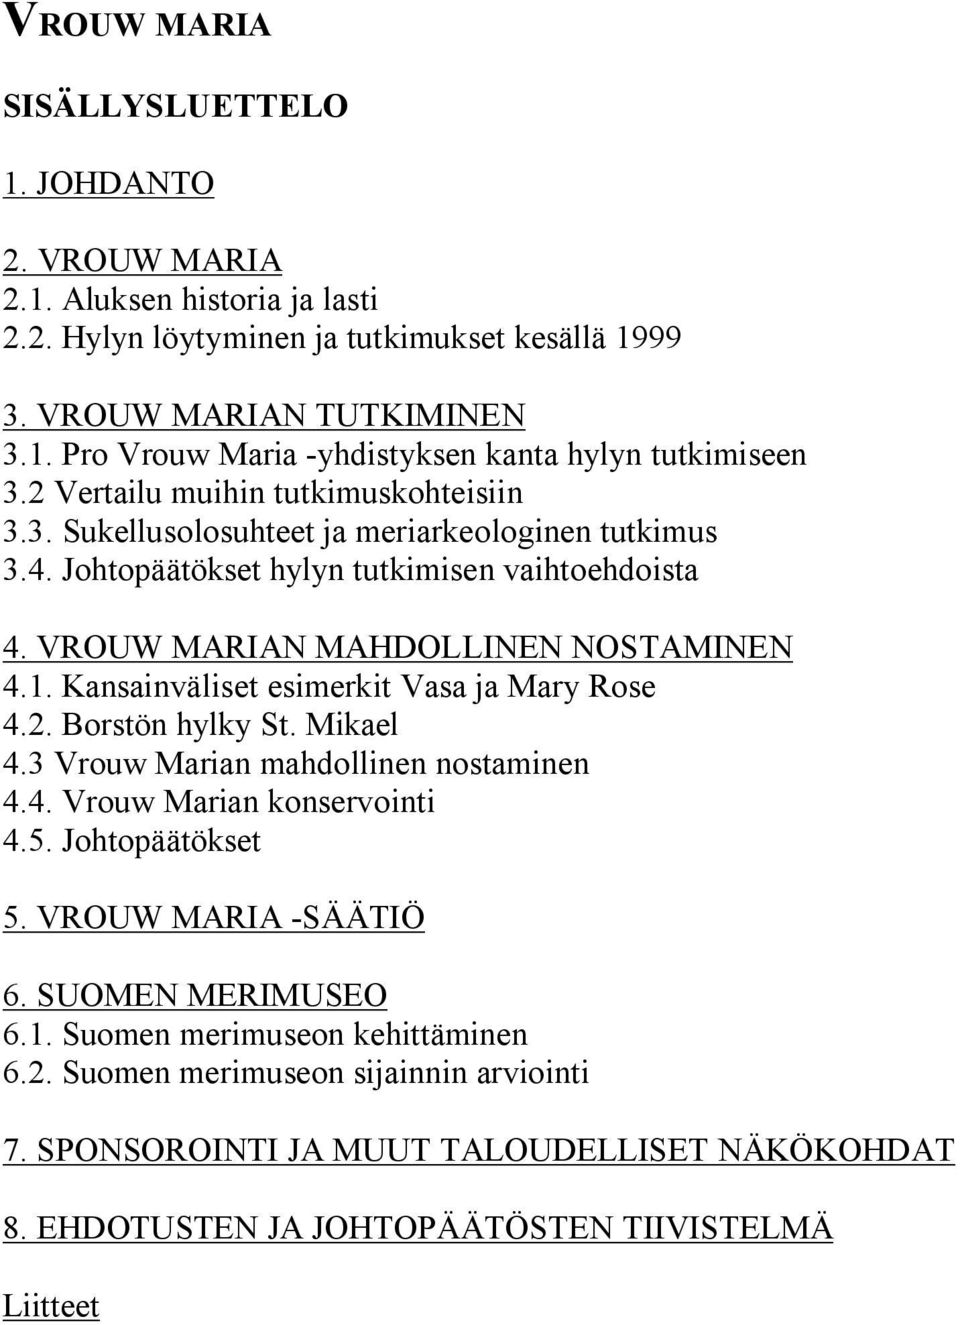 Kansainväliset esimerkit Vasa ja Mary Rose 4.2. Borstön hylky St. Mikael 4.3 Vrouw Marian mahdollinen nostaminen 4.4. Vrouw Marian konservointi 4.5. Johtopäätökset 5. VROUW MARIA -SÄÄTIÖ 6.